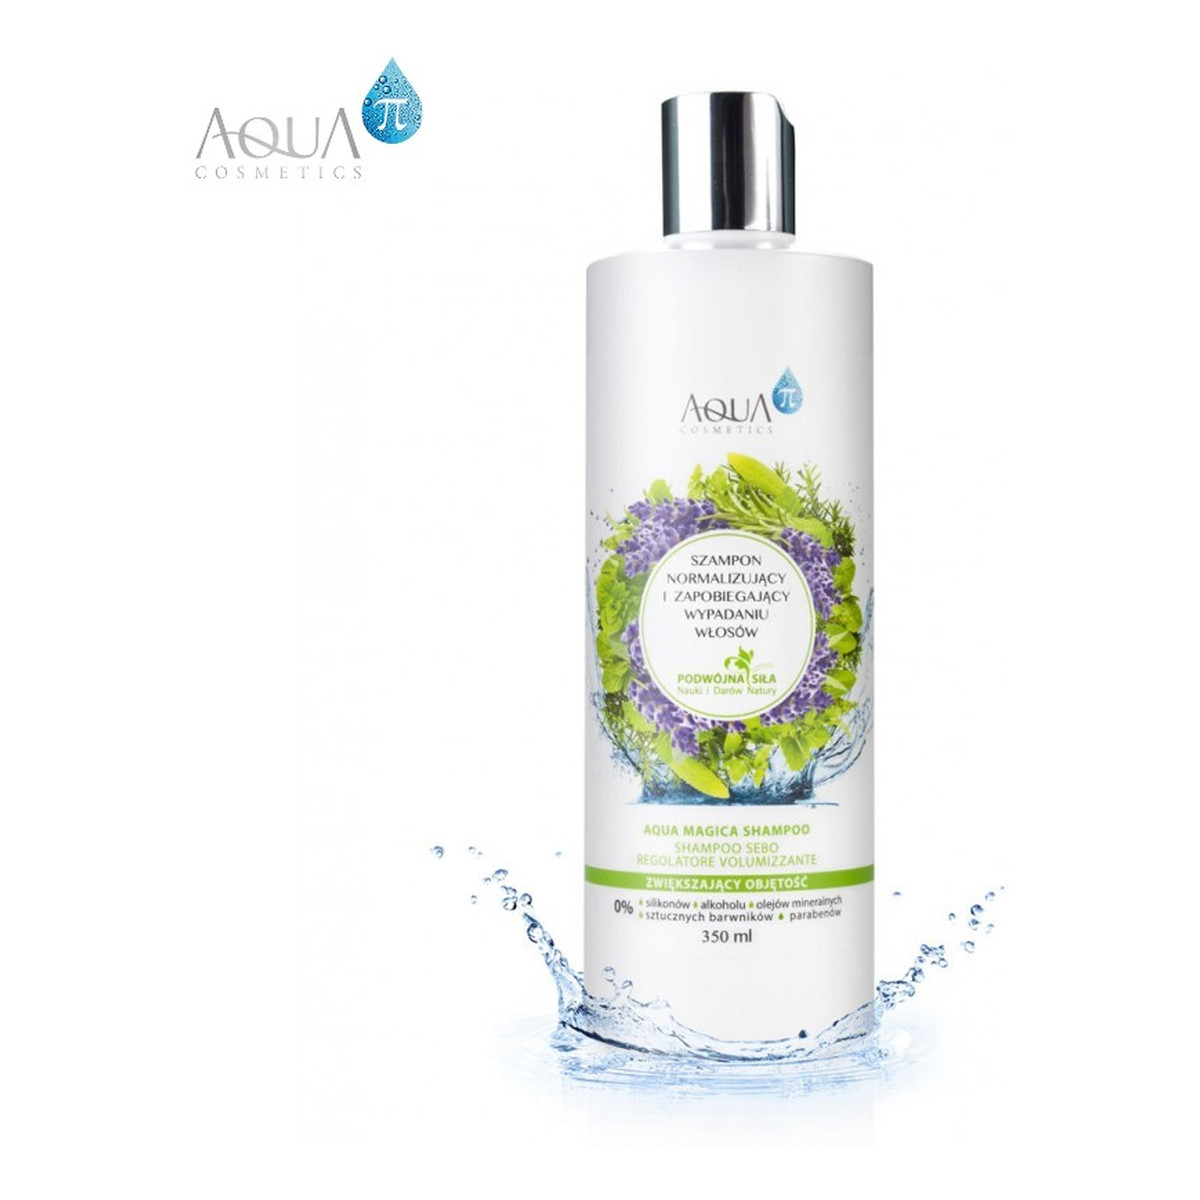 Aqua Pi Szampon normalizujący i zapobiegający wypadaniu włosów, zwiększający objętość 350ml